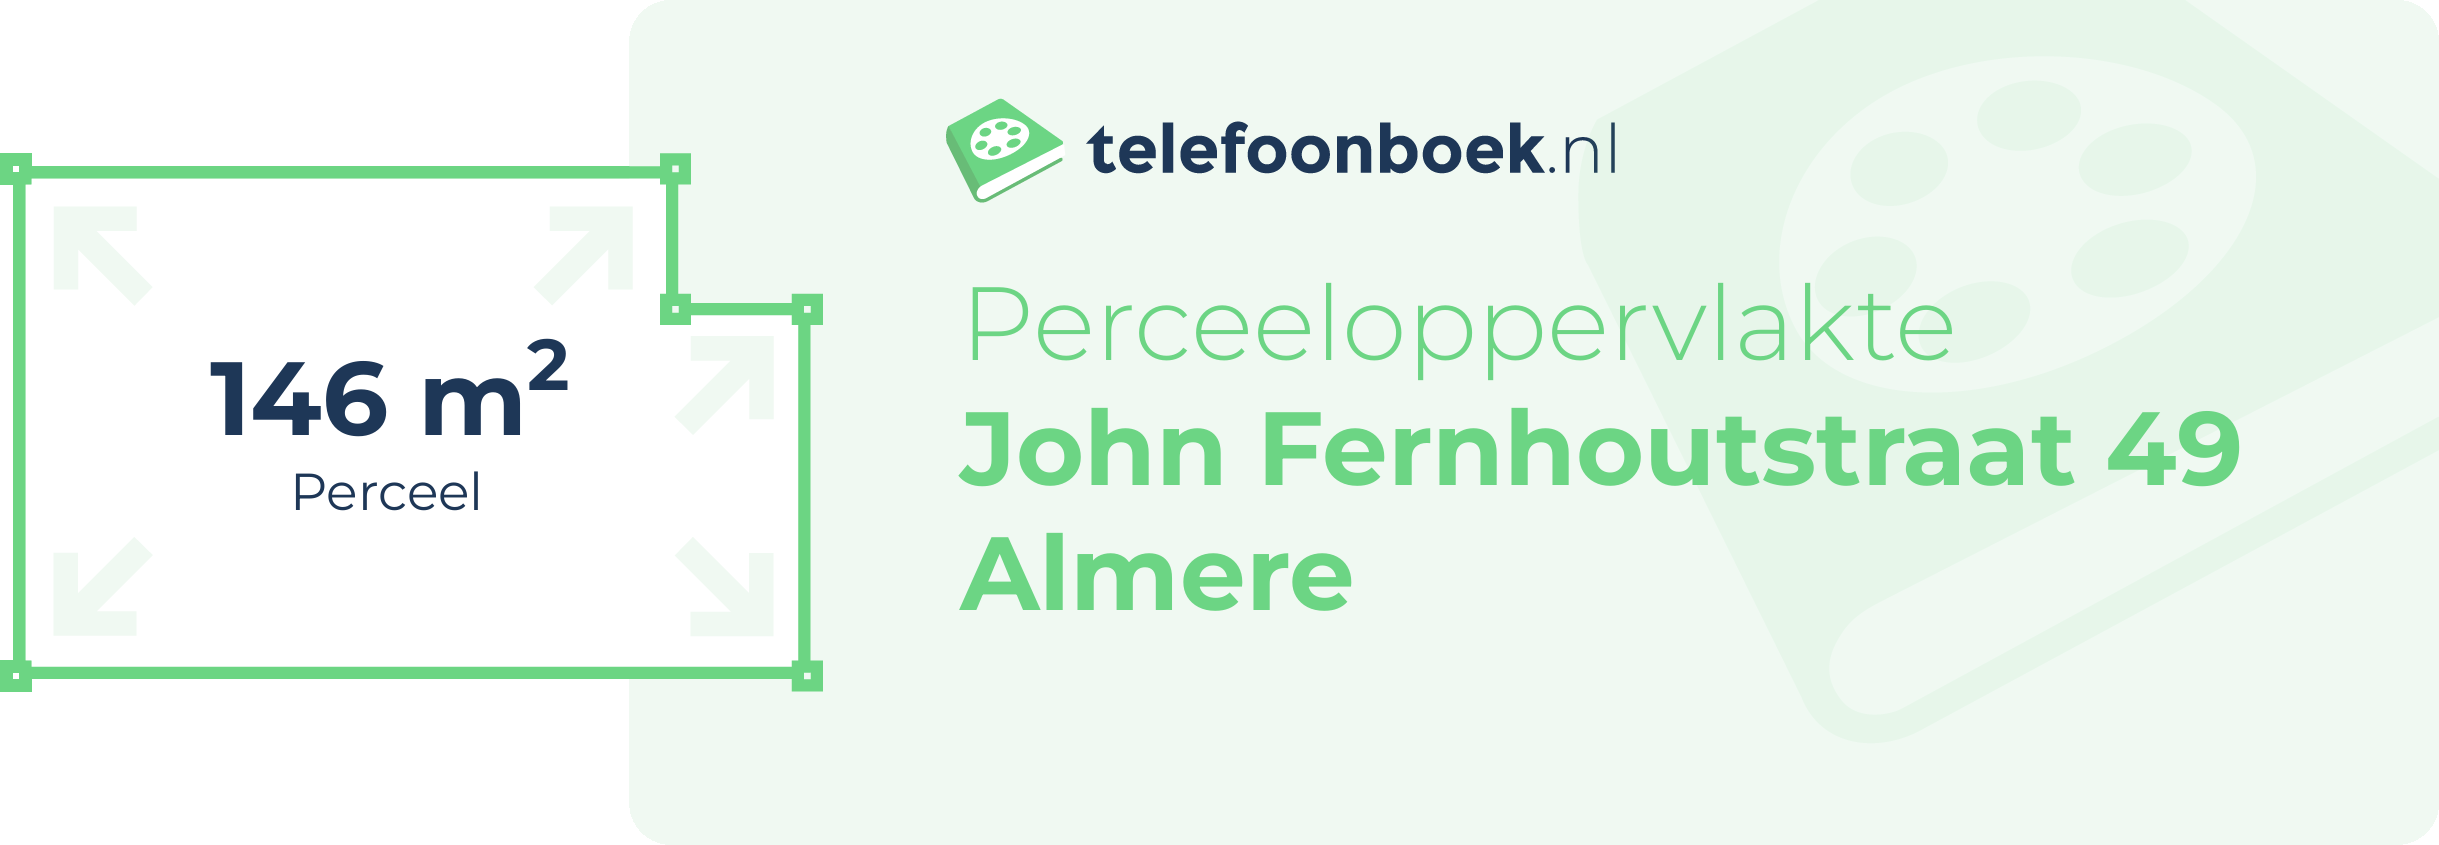 Perceeloppervlakte John Fernhoutstraat 49 Almere